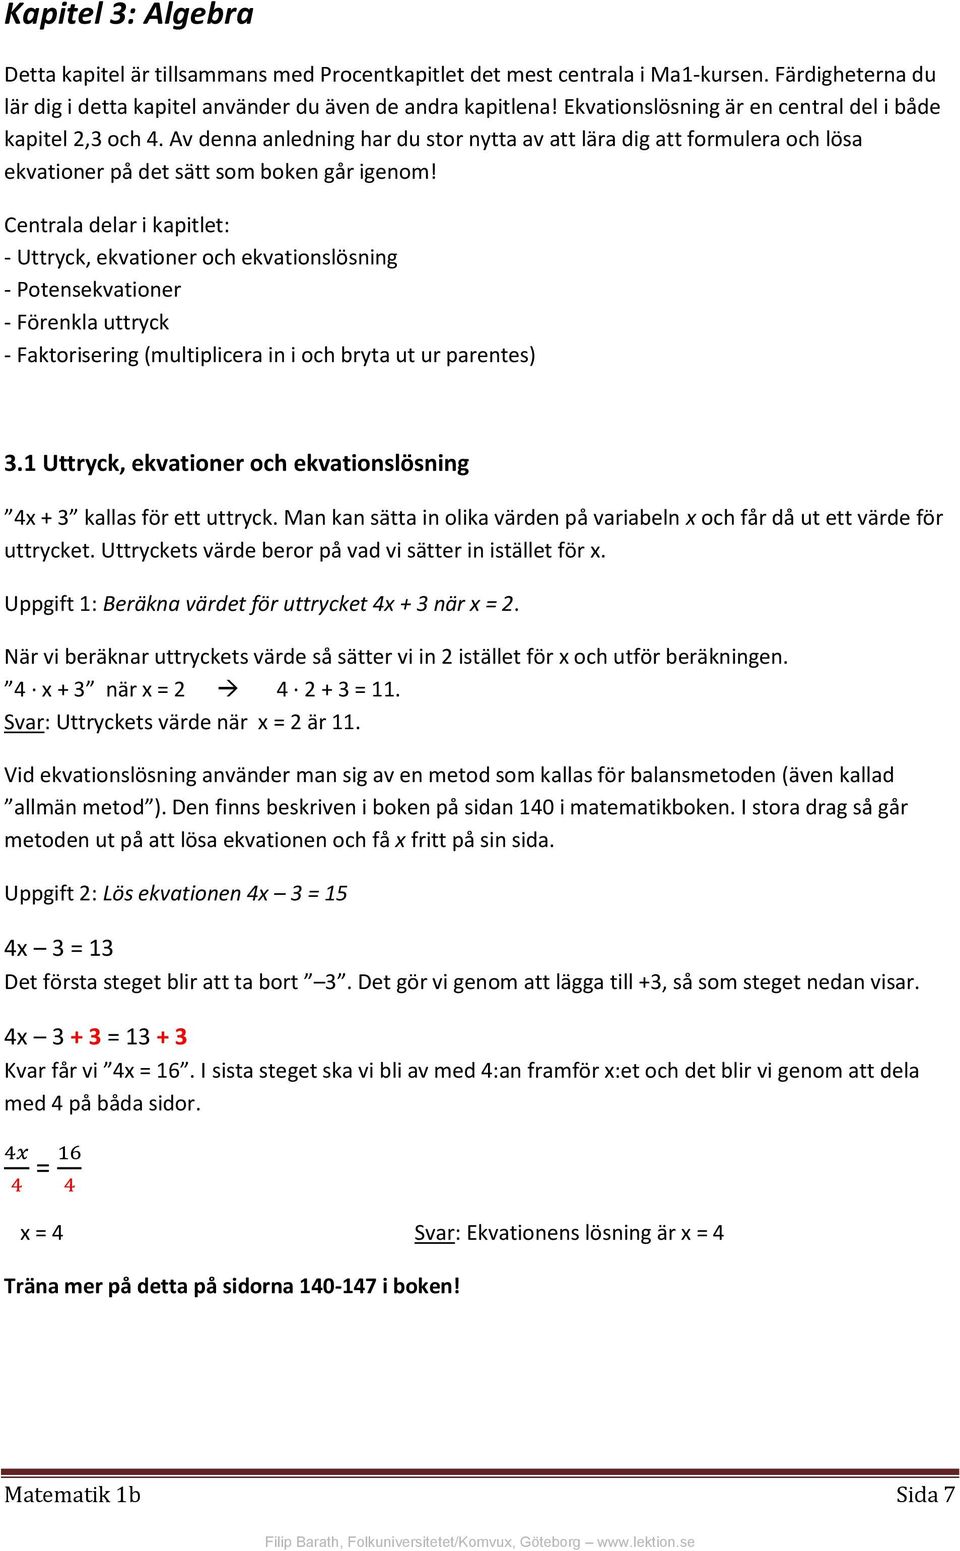 Sammanfattning: Matematik 1b - PDF Free Download